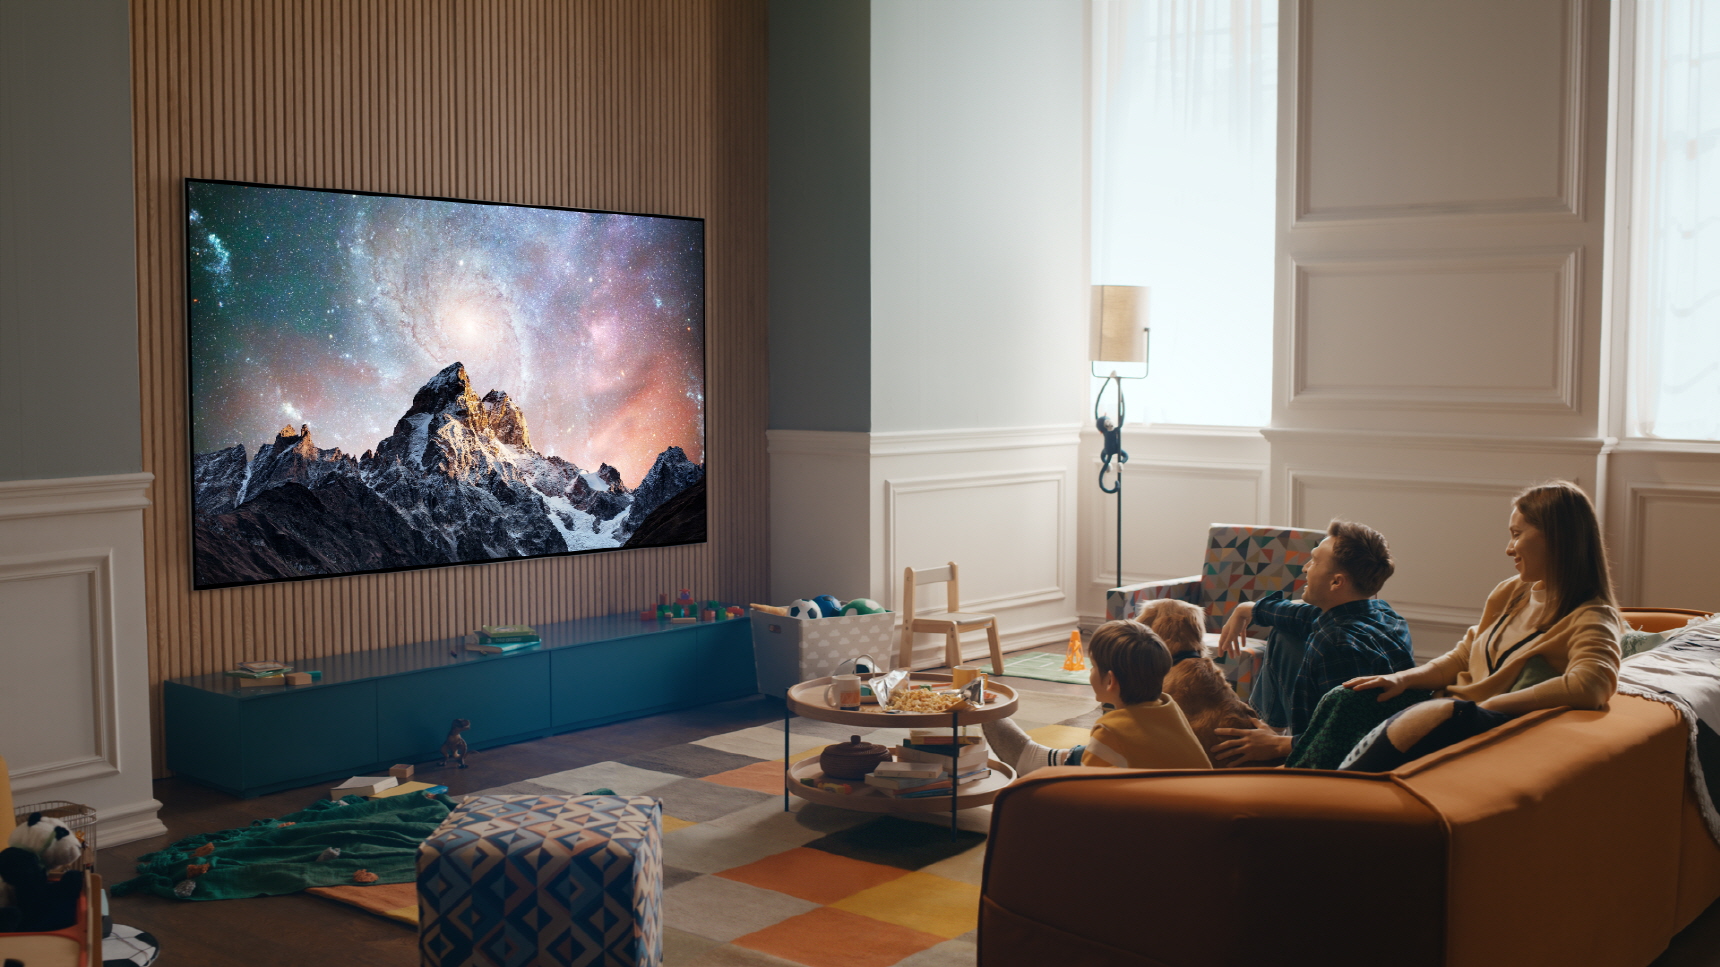 LG zaprezentowało najmniejszy telewizor OLED na świecie